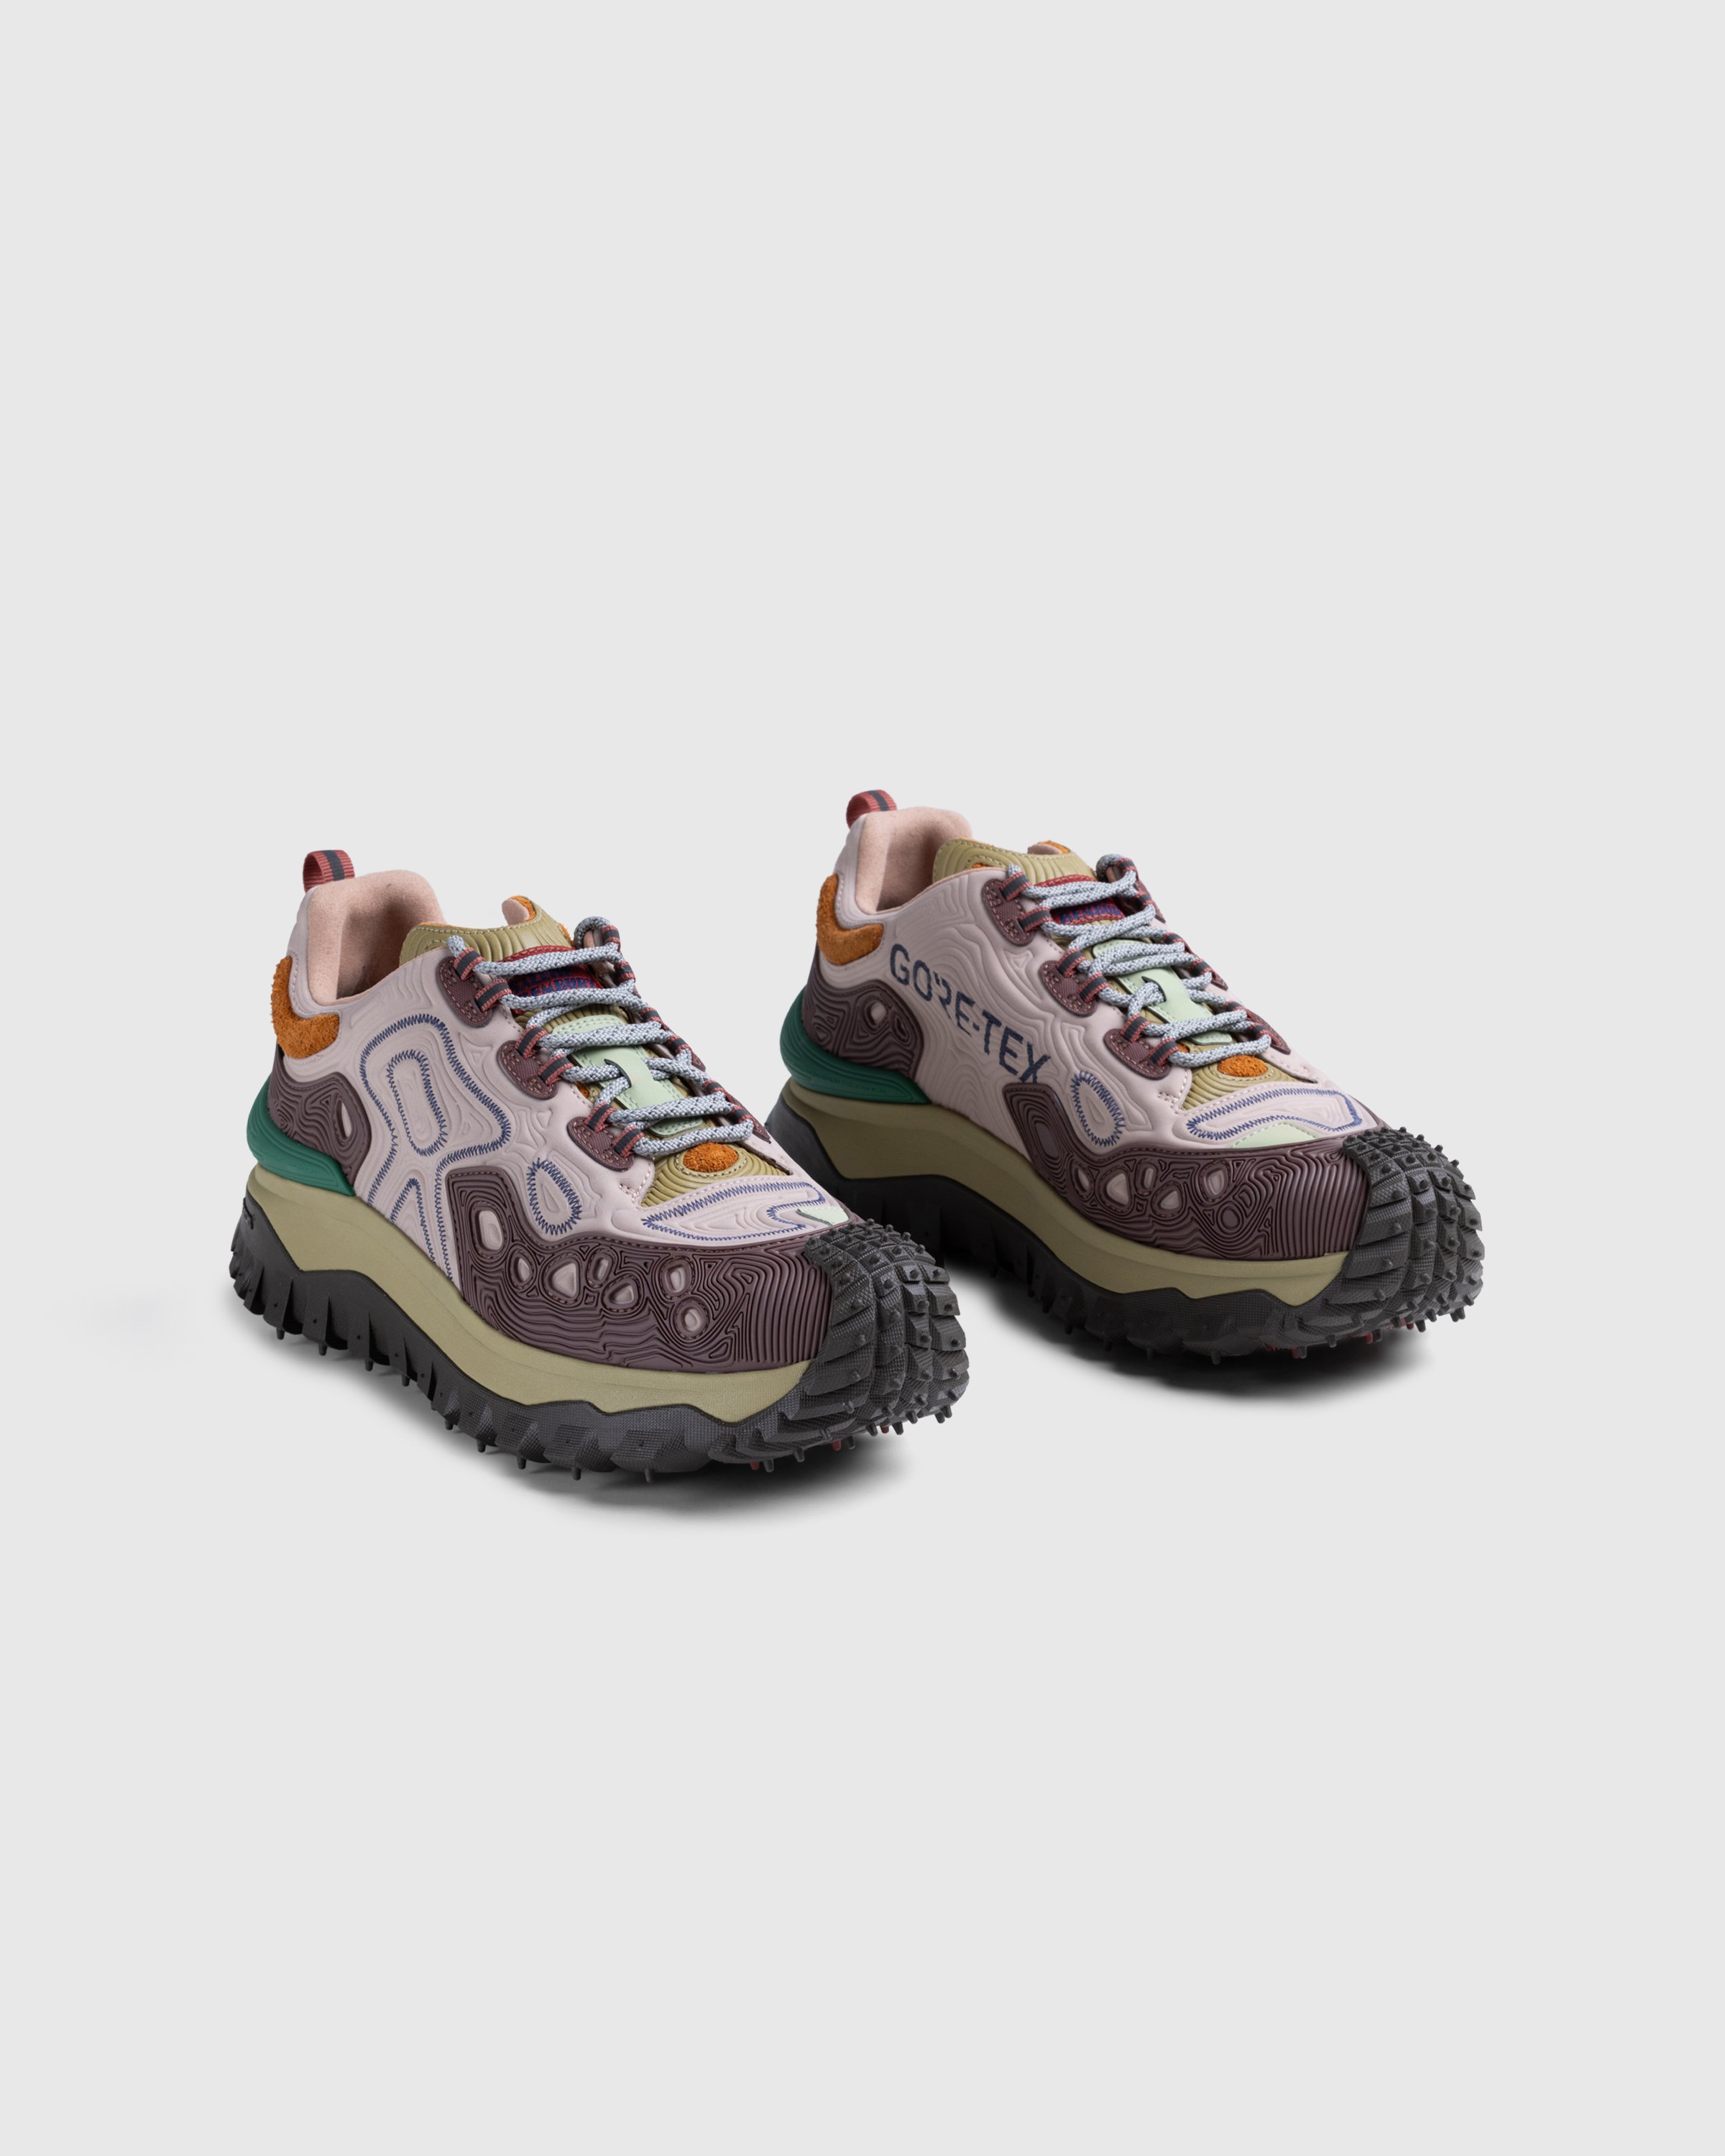 Moncler x Salehe Bembury - Trailgrip Grain Sneakers Pink - Footwear - Pink - Image 3